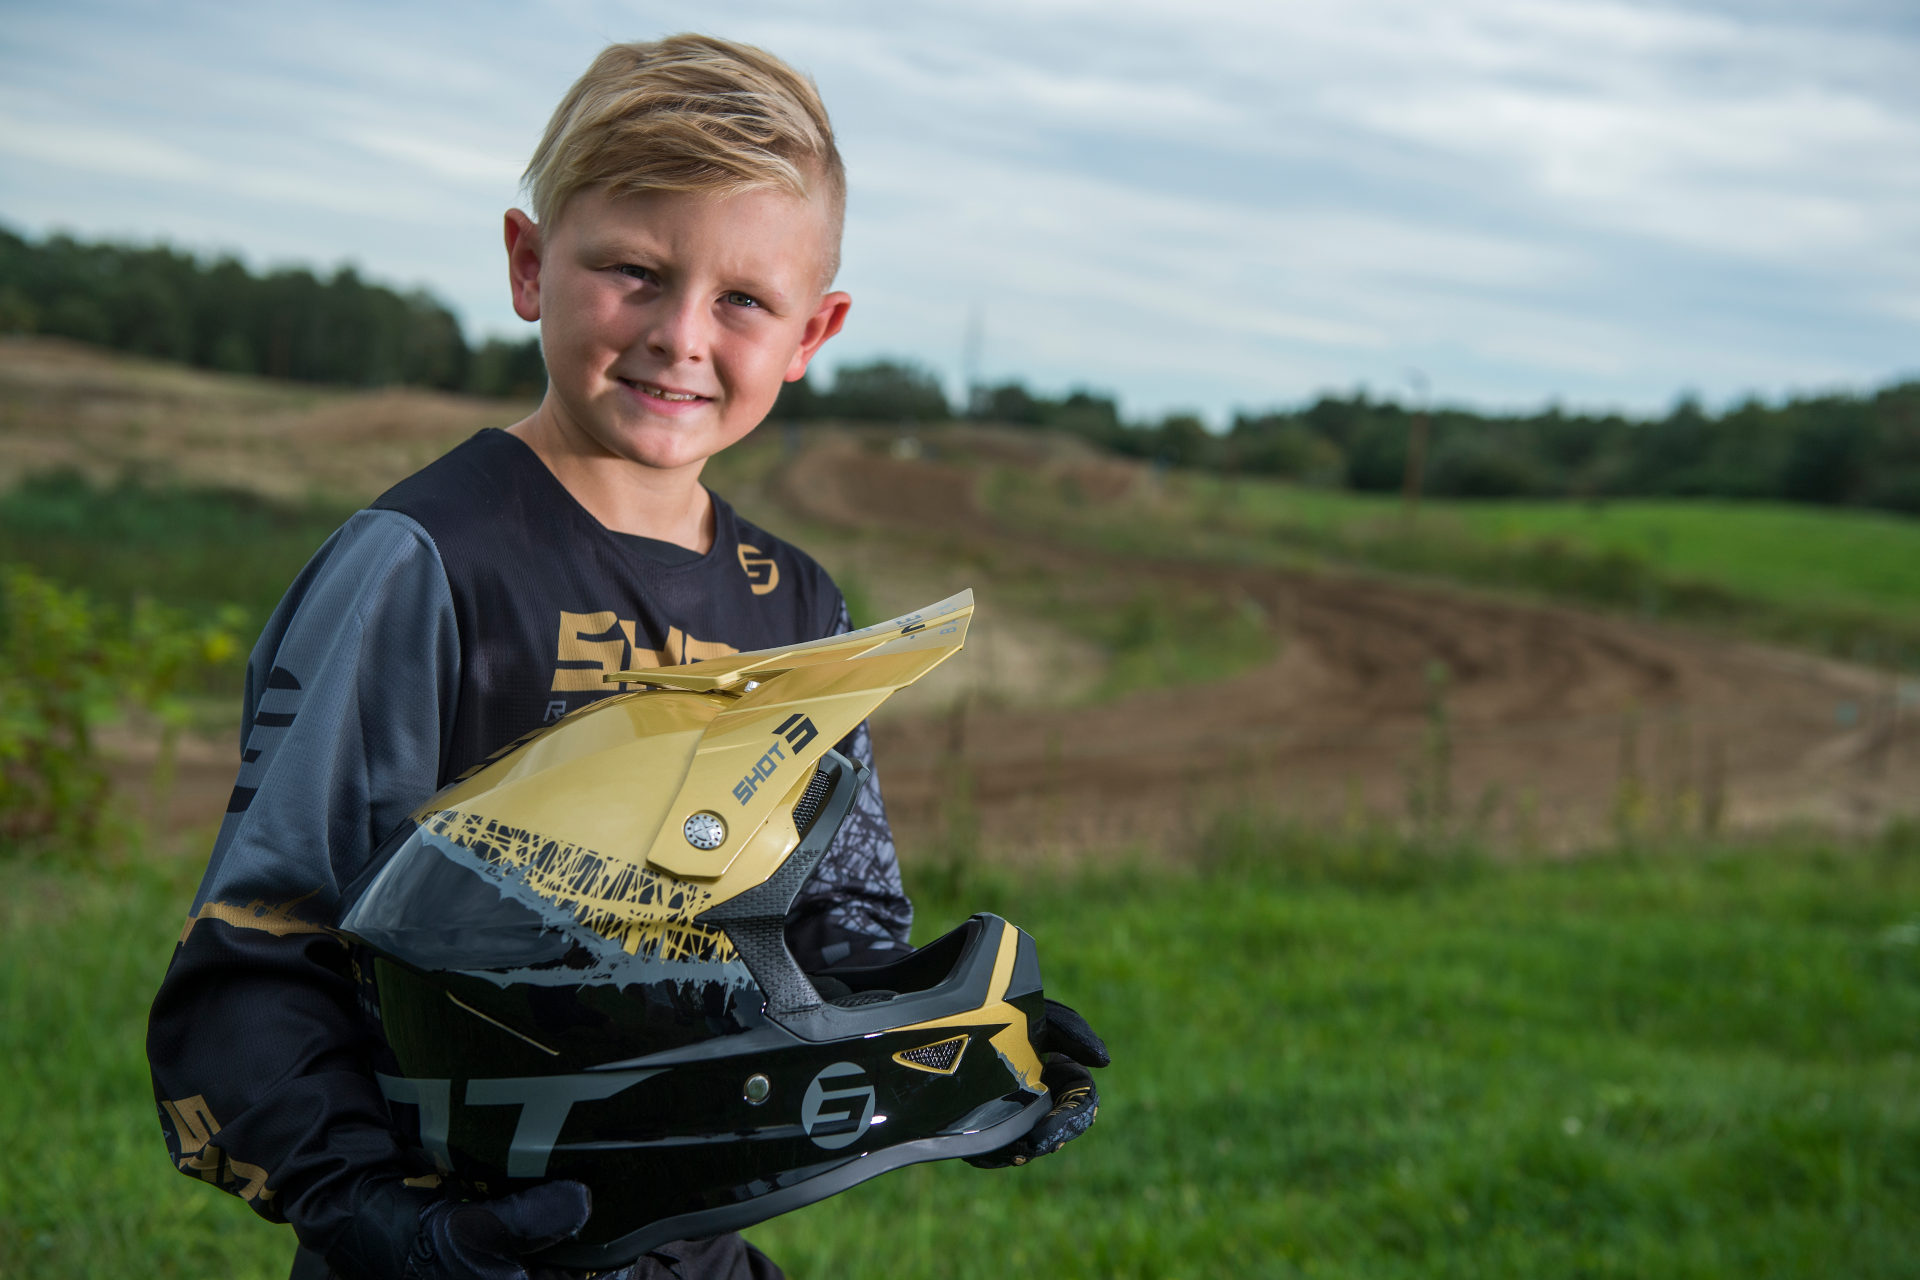 Motocross niños: 5 para en total seguridad